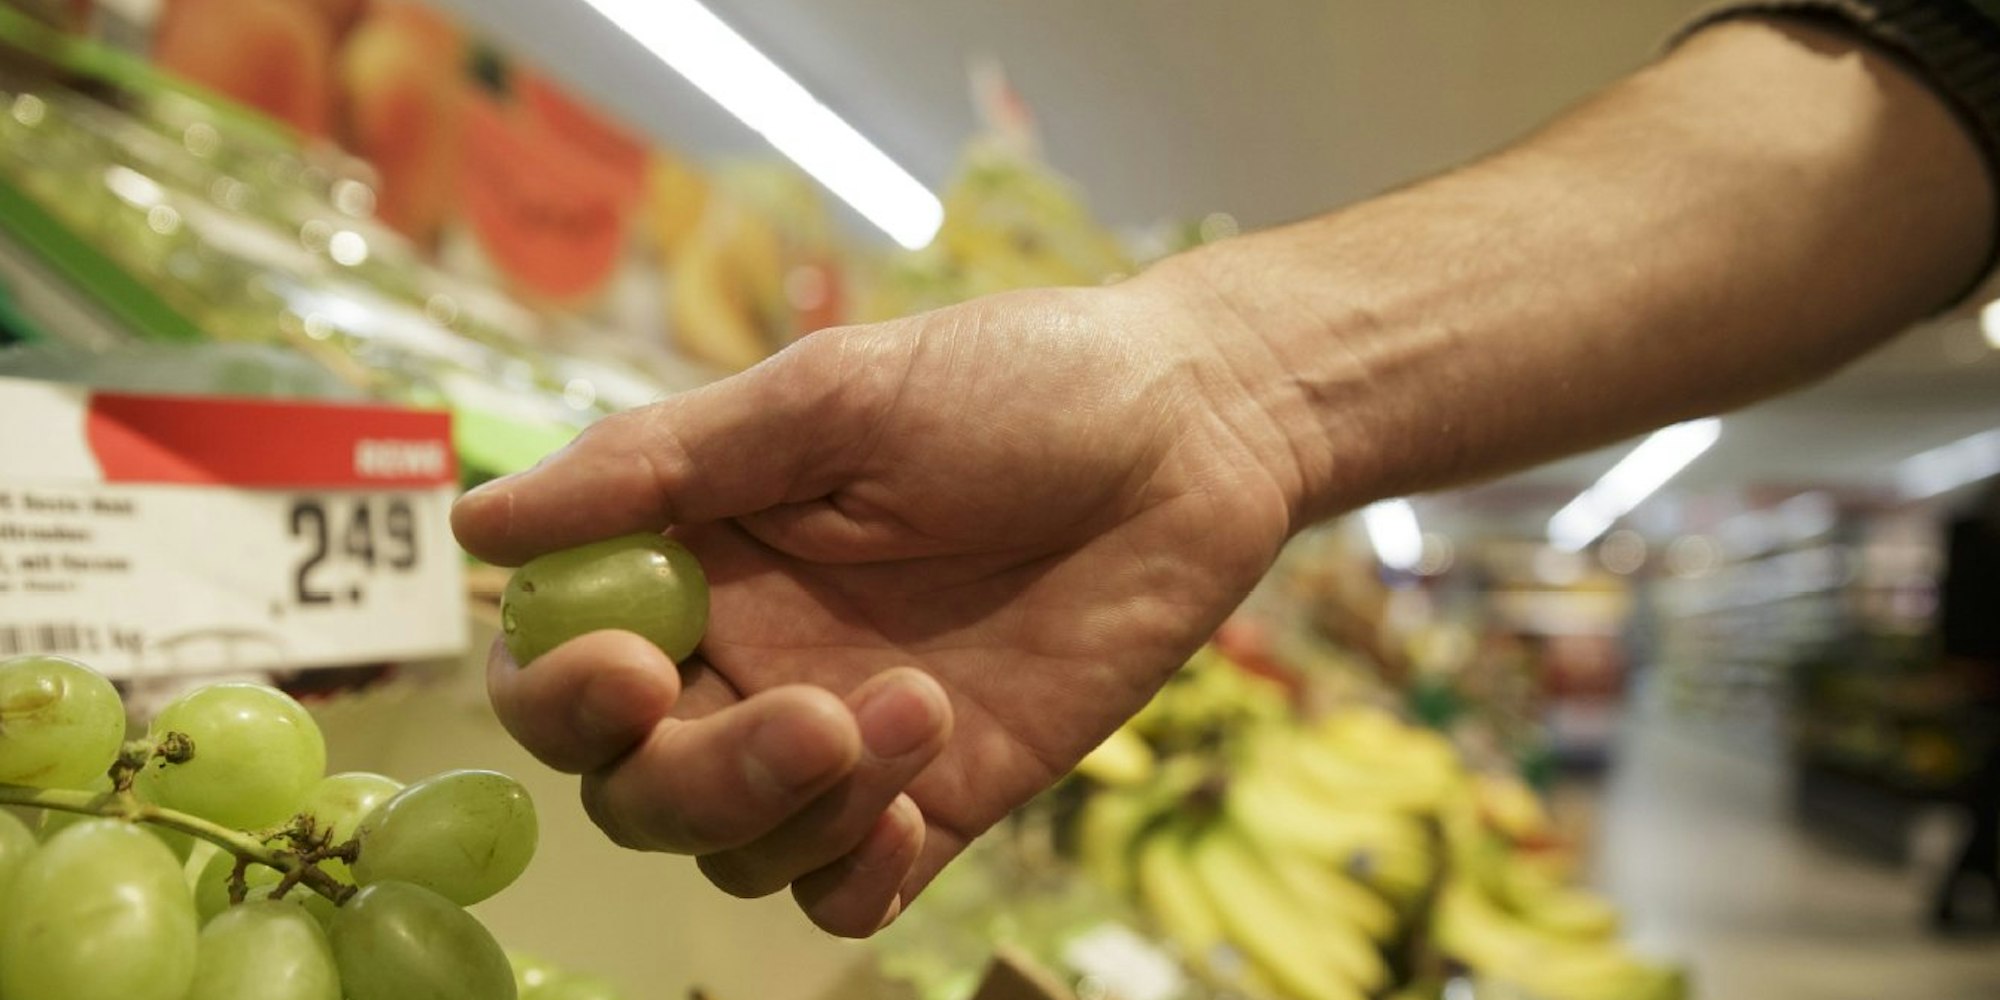 Wer Obst oder Gemüse im Supermarkt probiert, begeht laut Gesetz einen Diebstahl. (Fotos: Neumann)